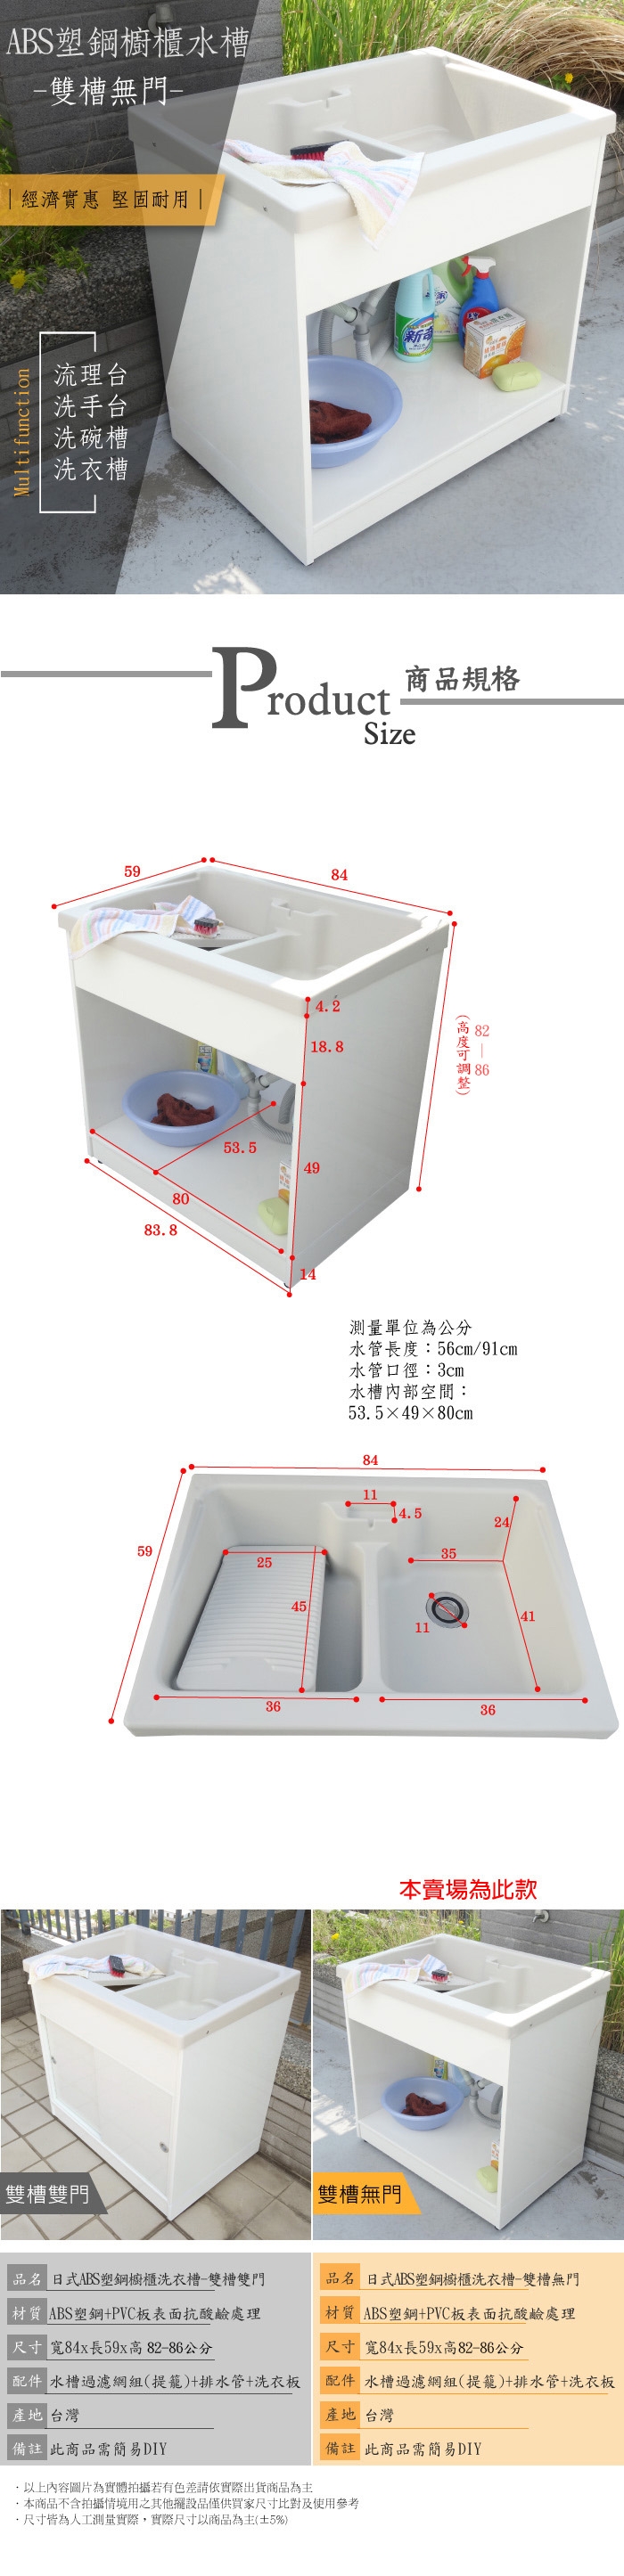 【Abis】雙11爆殺組~ABS櫥櫃雙槽式無門洗衣槽1組 +小型塑鋼洗衣槽1組